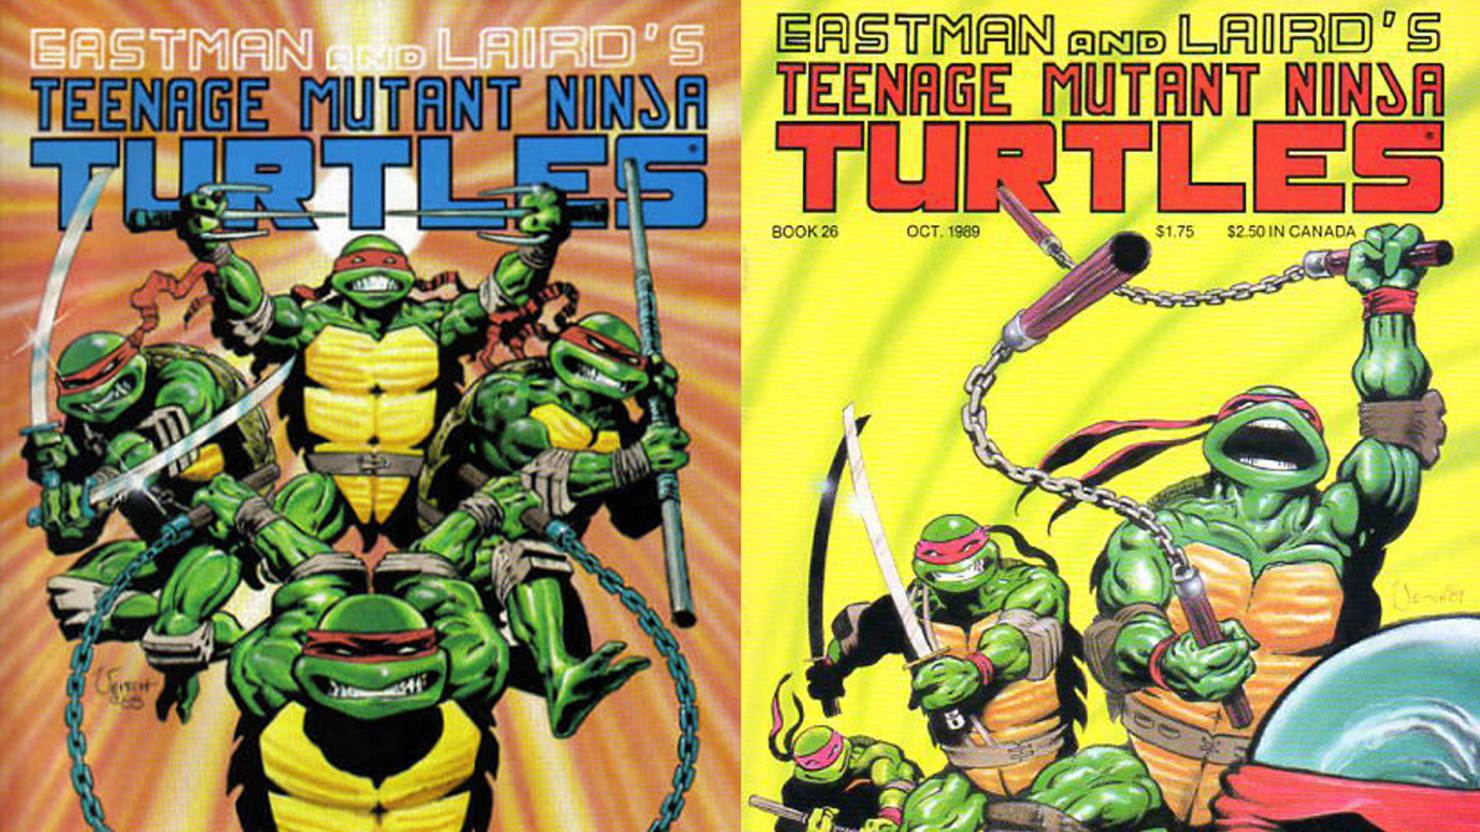 A Political History of the 'Teenage Mutant Ninja Turtles